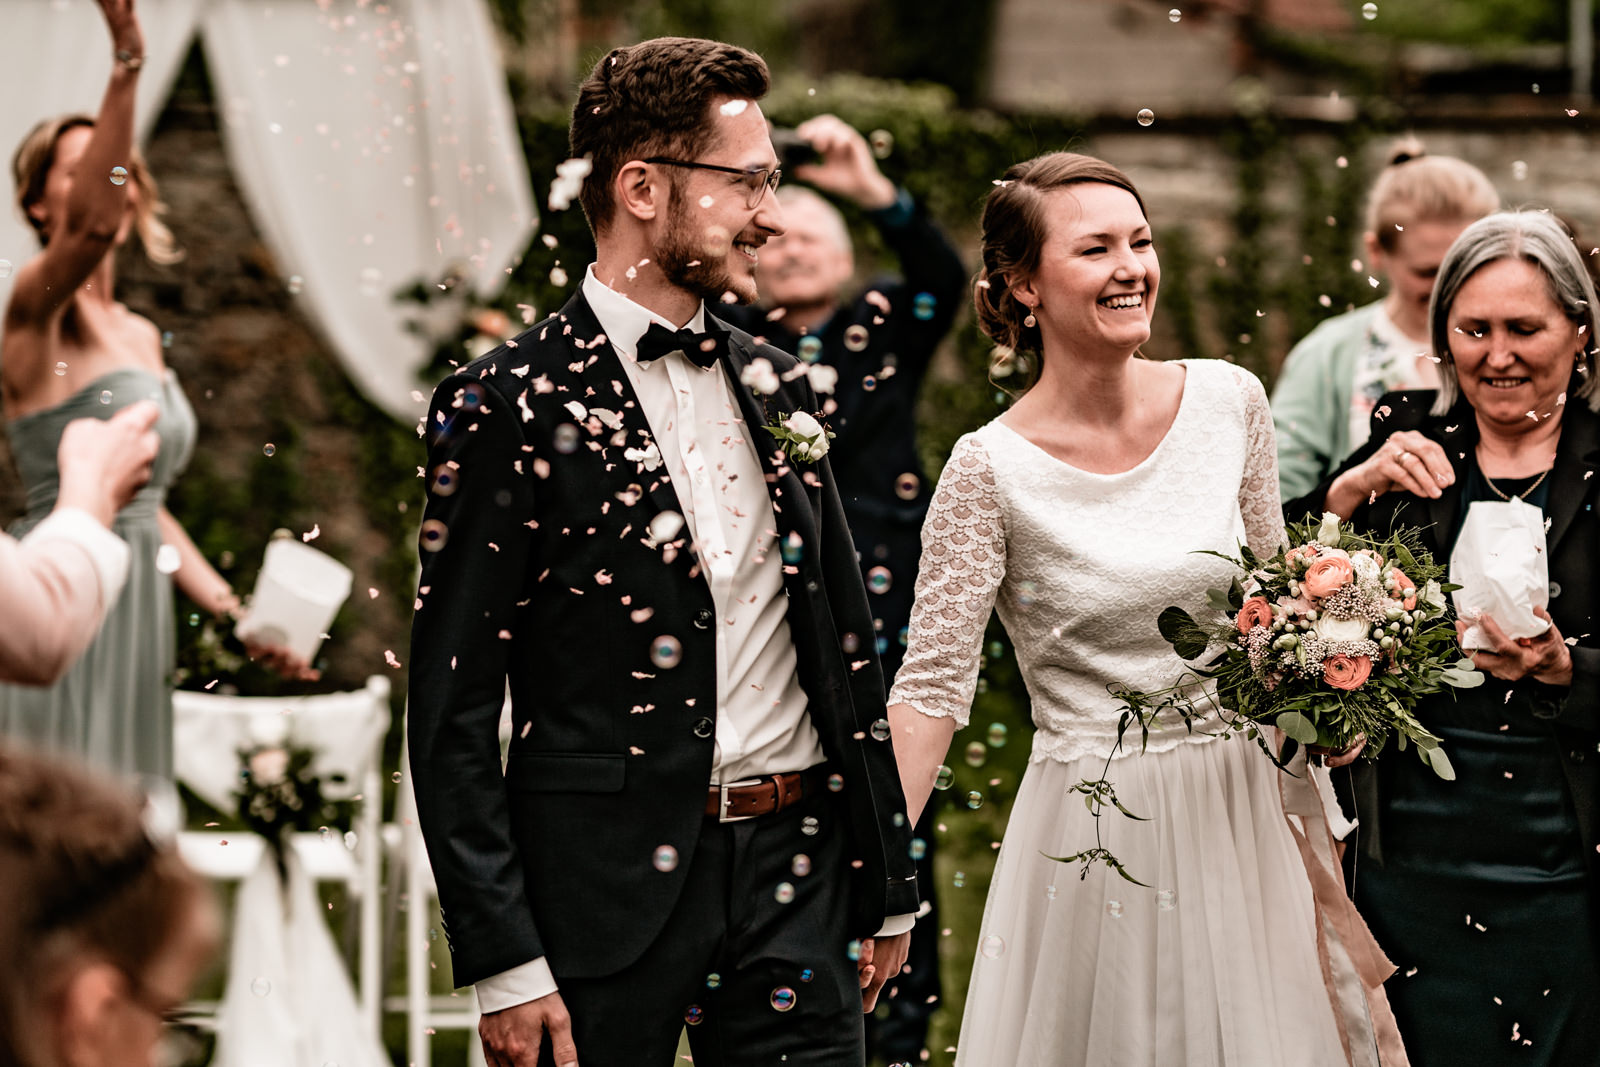 Hochzeit im Freien in der Villa Sommerach bei Würzburg. Hochzeitsbilder vom Hochzeitsfotograf Axel Link